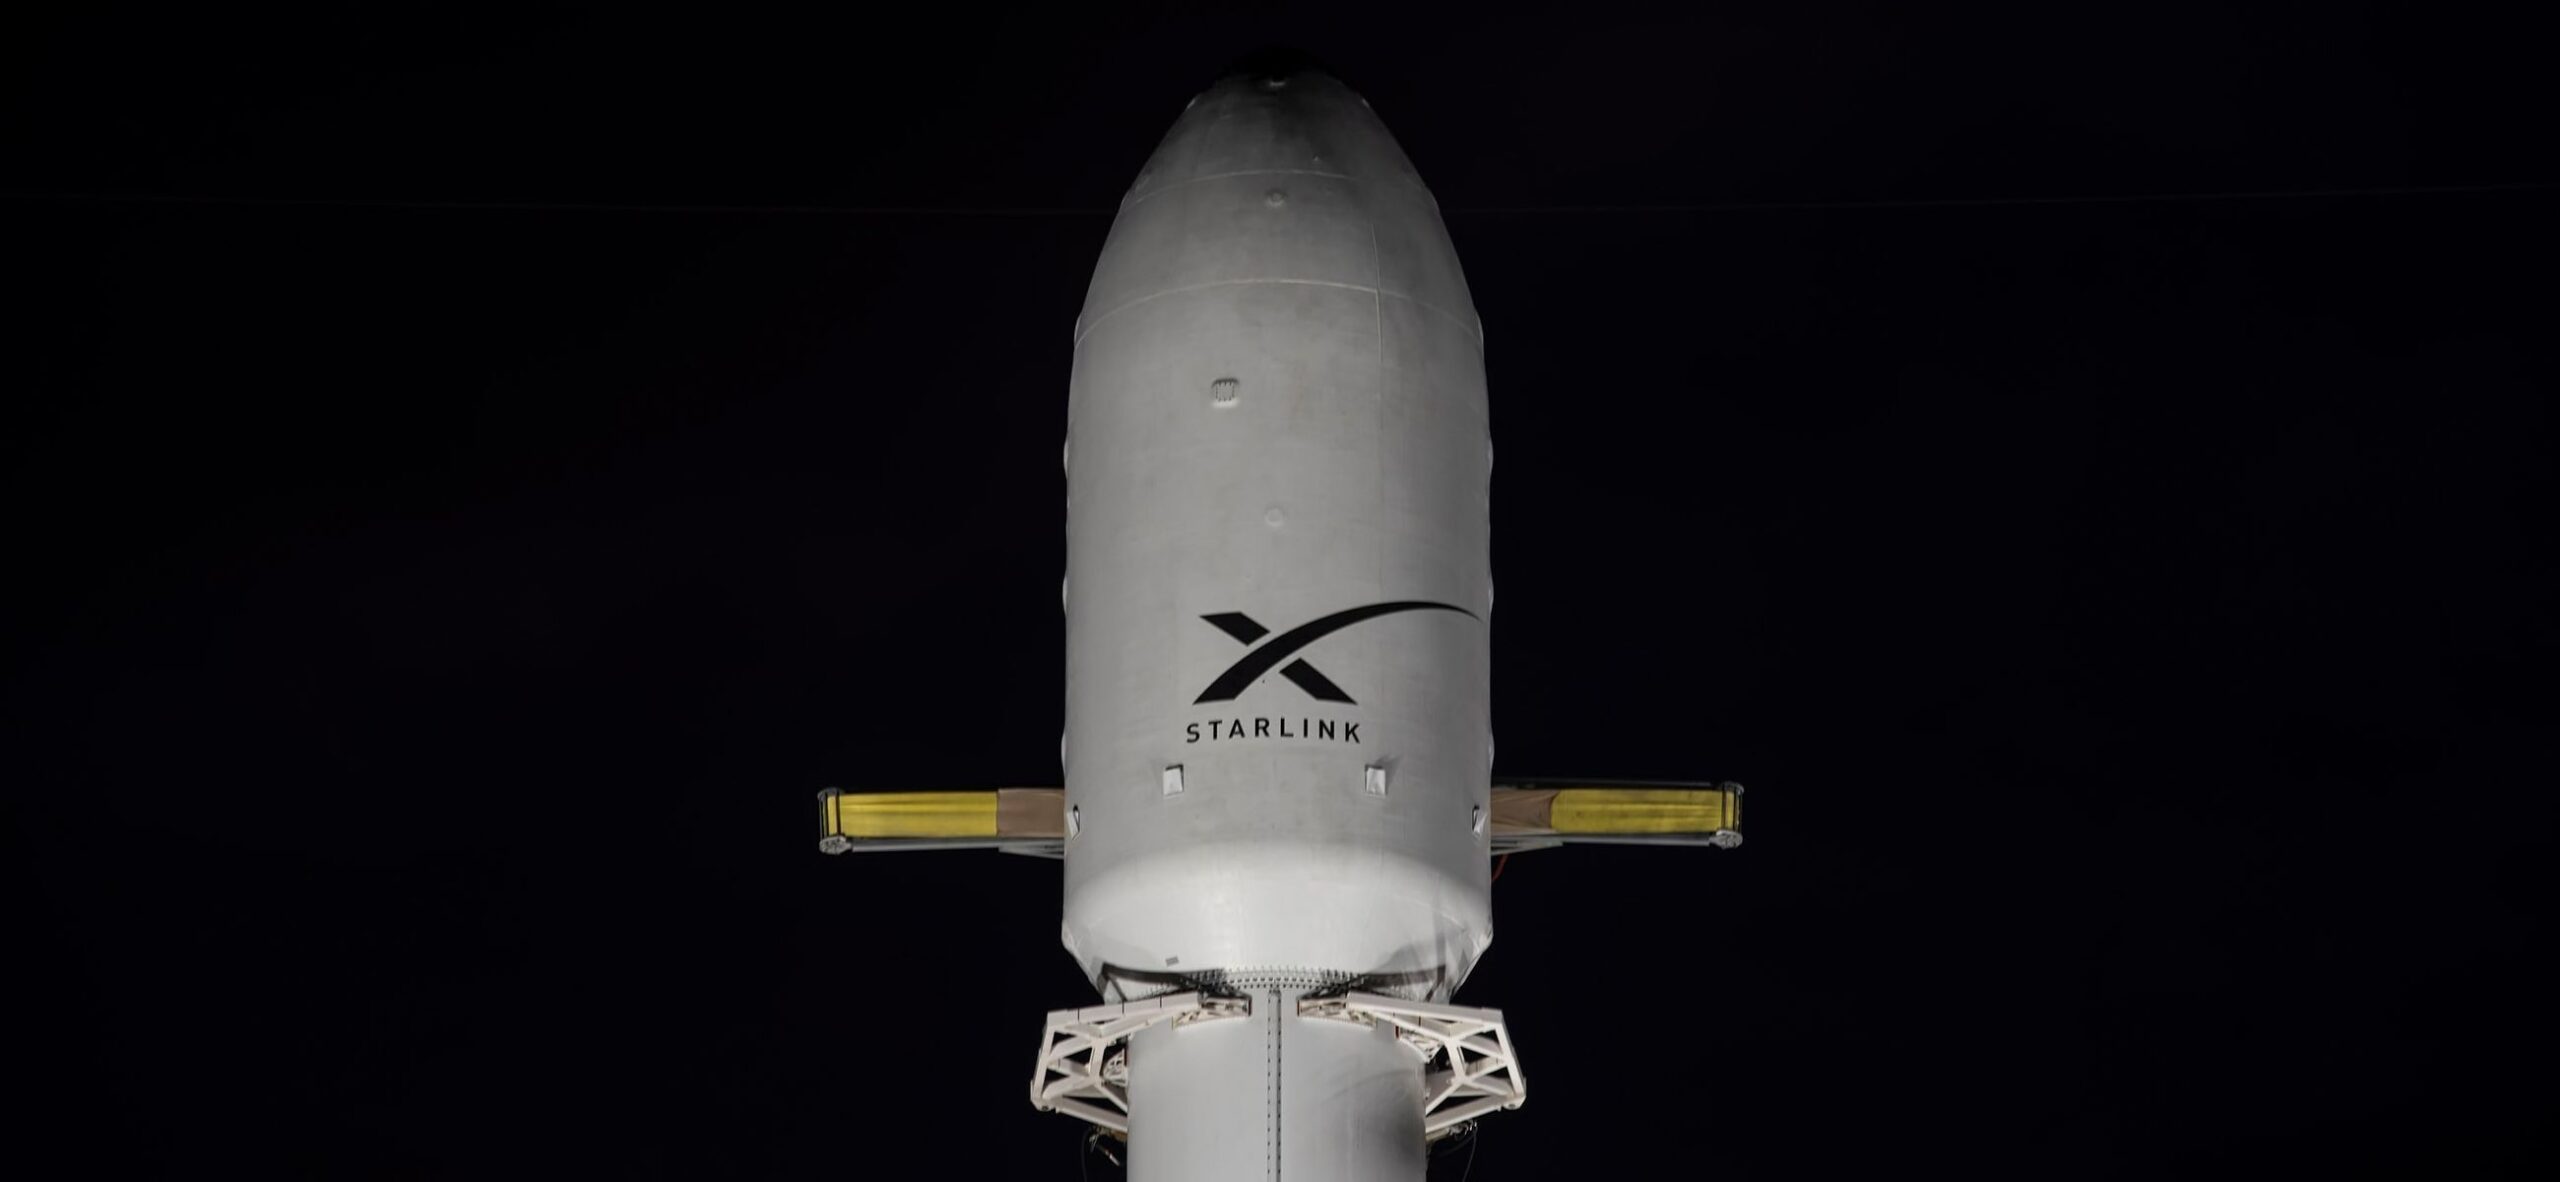 Los equipos de SpaceX lanzan el cohete Falcon 9 en la misión Starlink desde Cabo Cañaveral - Spaceflight Now